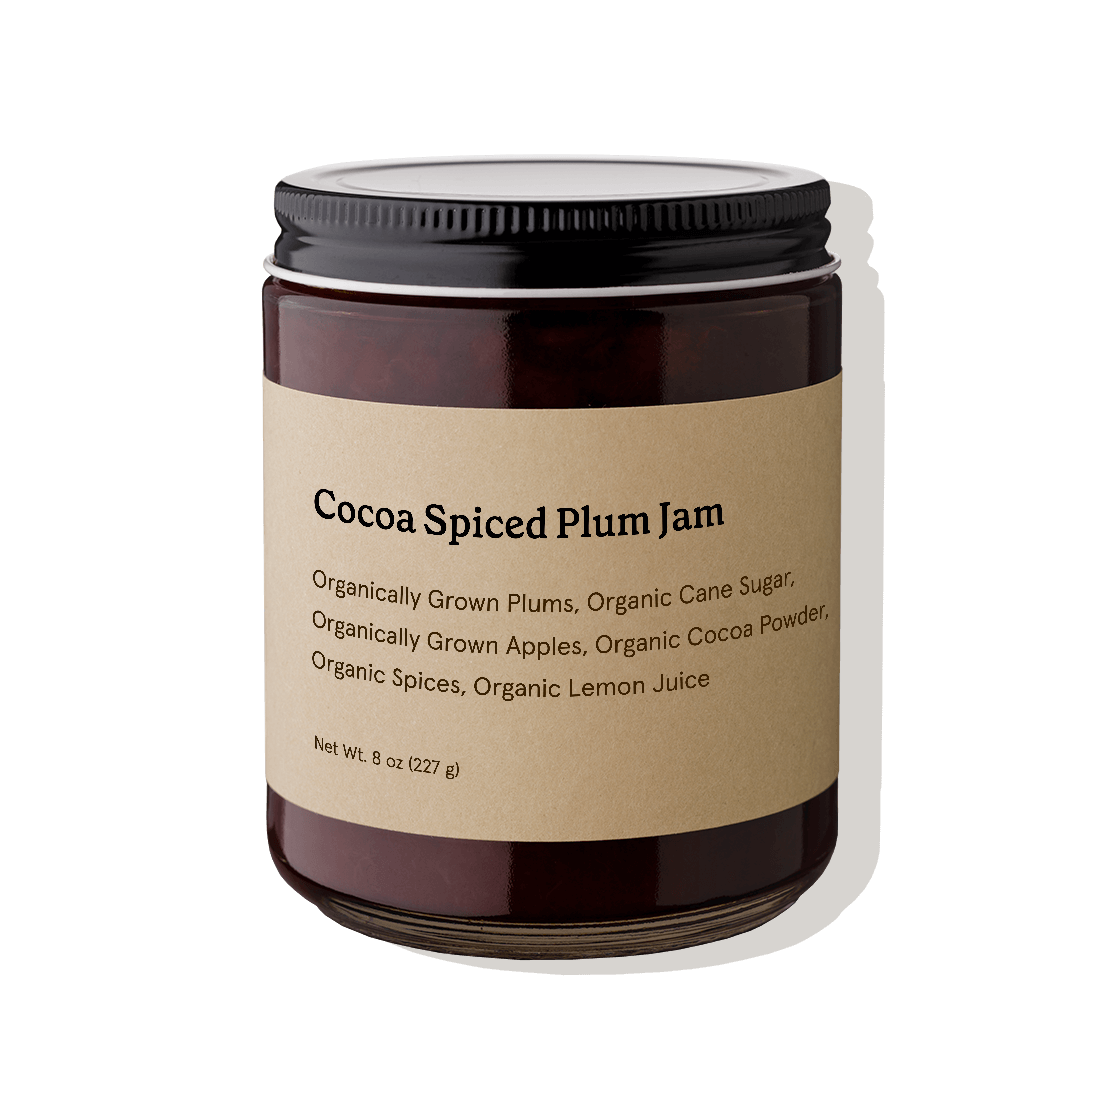 Cocoa Spiced Plum Jam